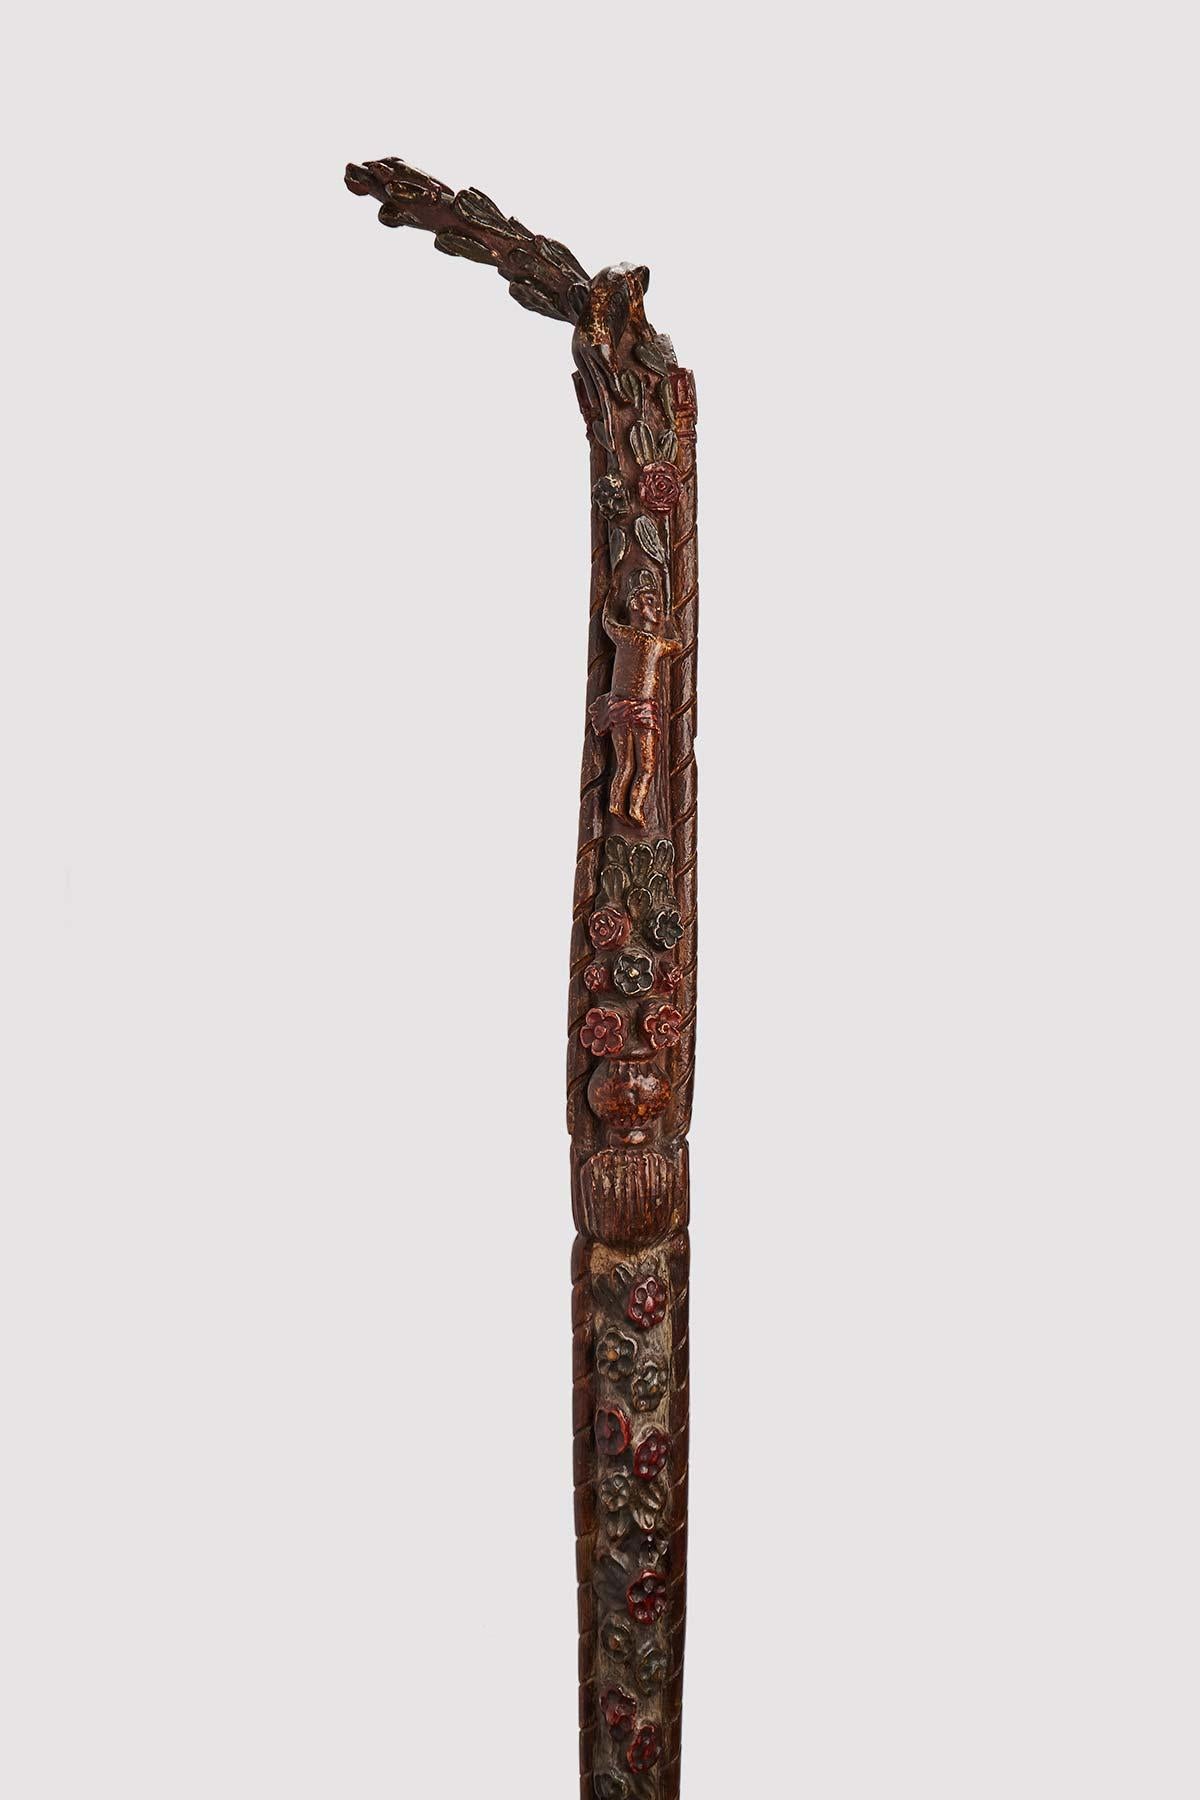 Stock der Volkskunst: einzigartiges Stück aus geschnitztem und geschnitztem Holz, sehr hoch, weinrot lackiert, mit Blumen und Figuren. Russland um 1830.